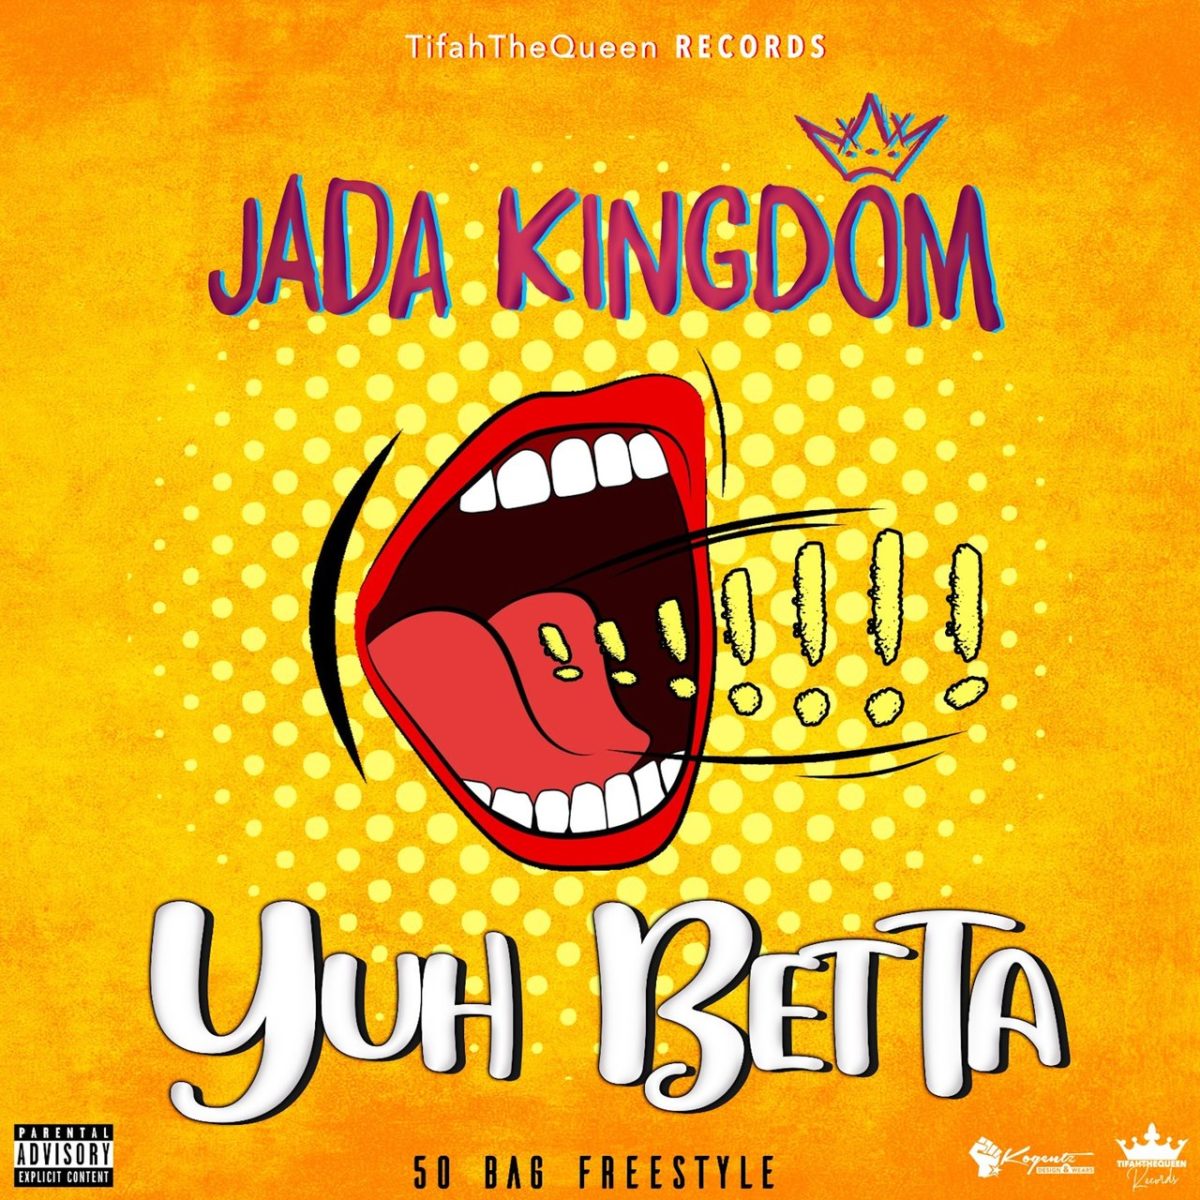 Jada Kingdom - Yuh Betta (50 Bag Freestyle) (Cover)